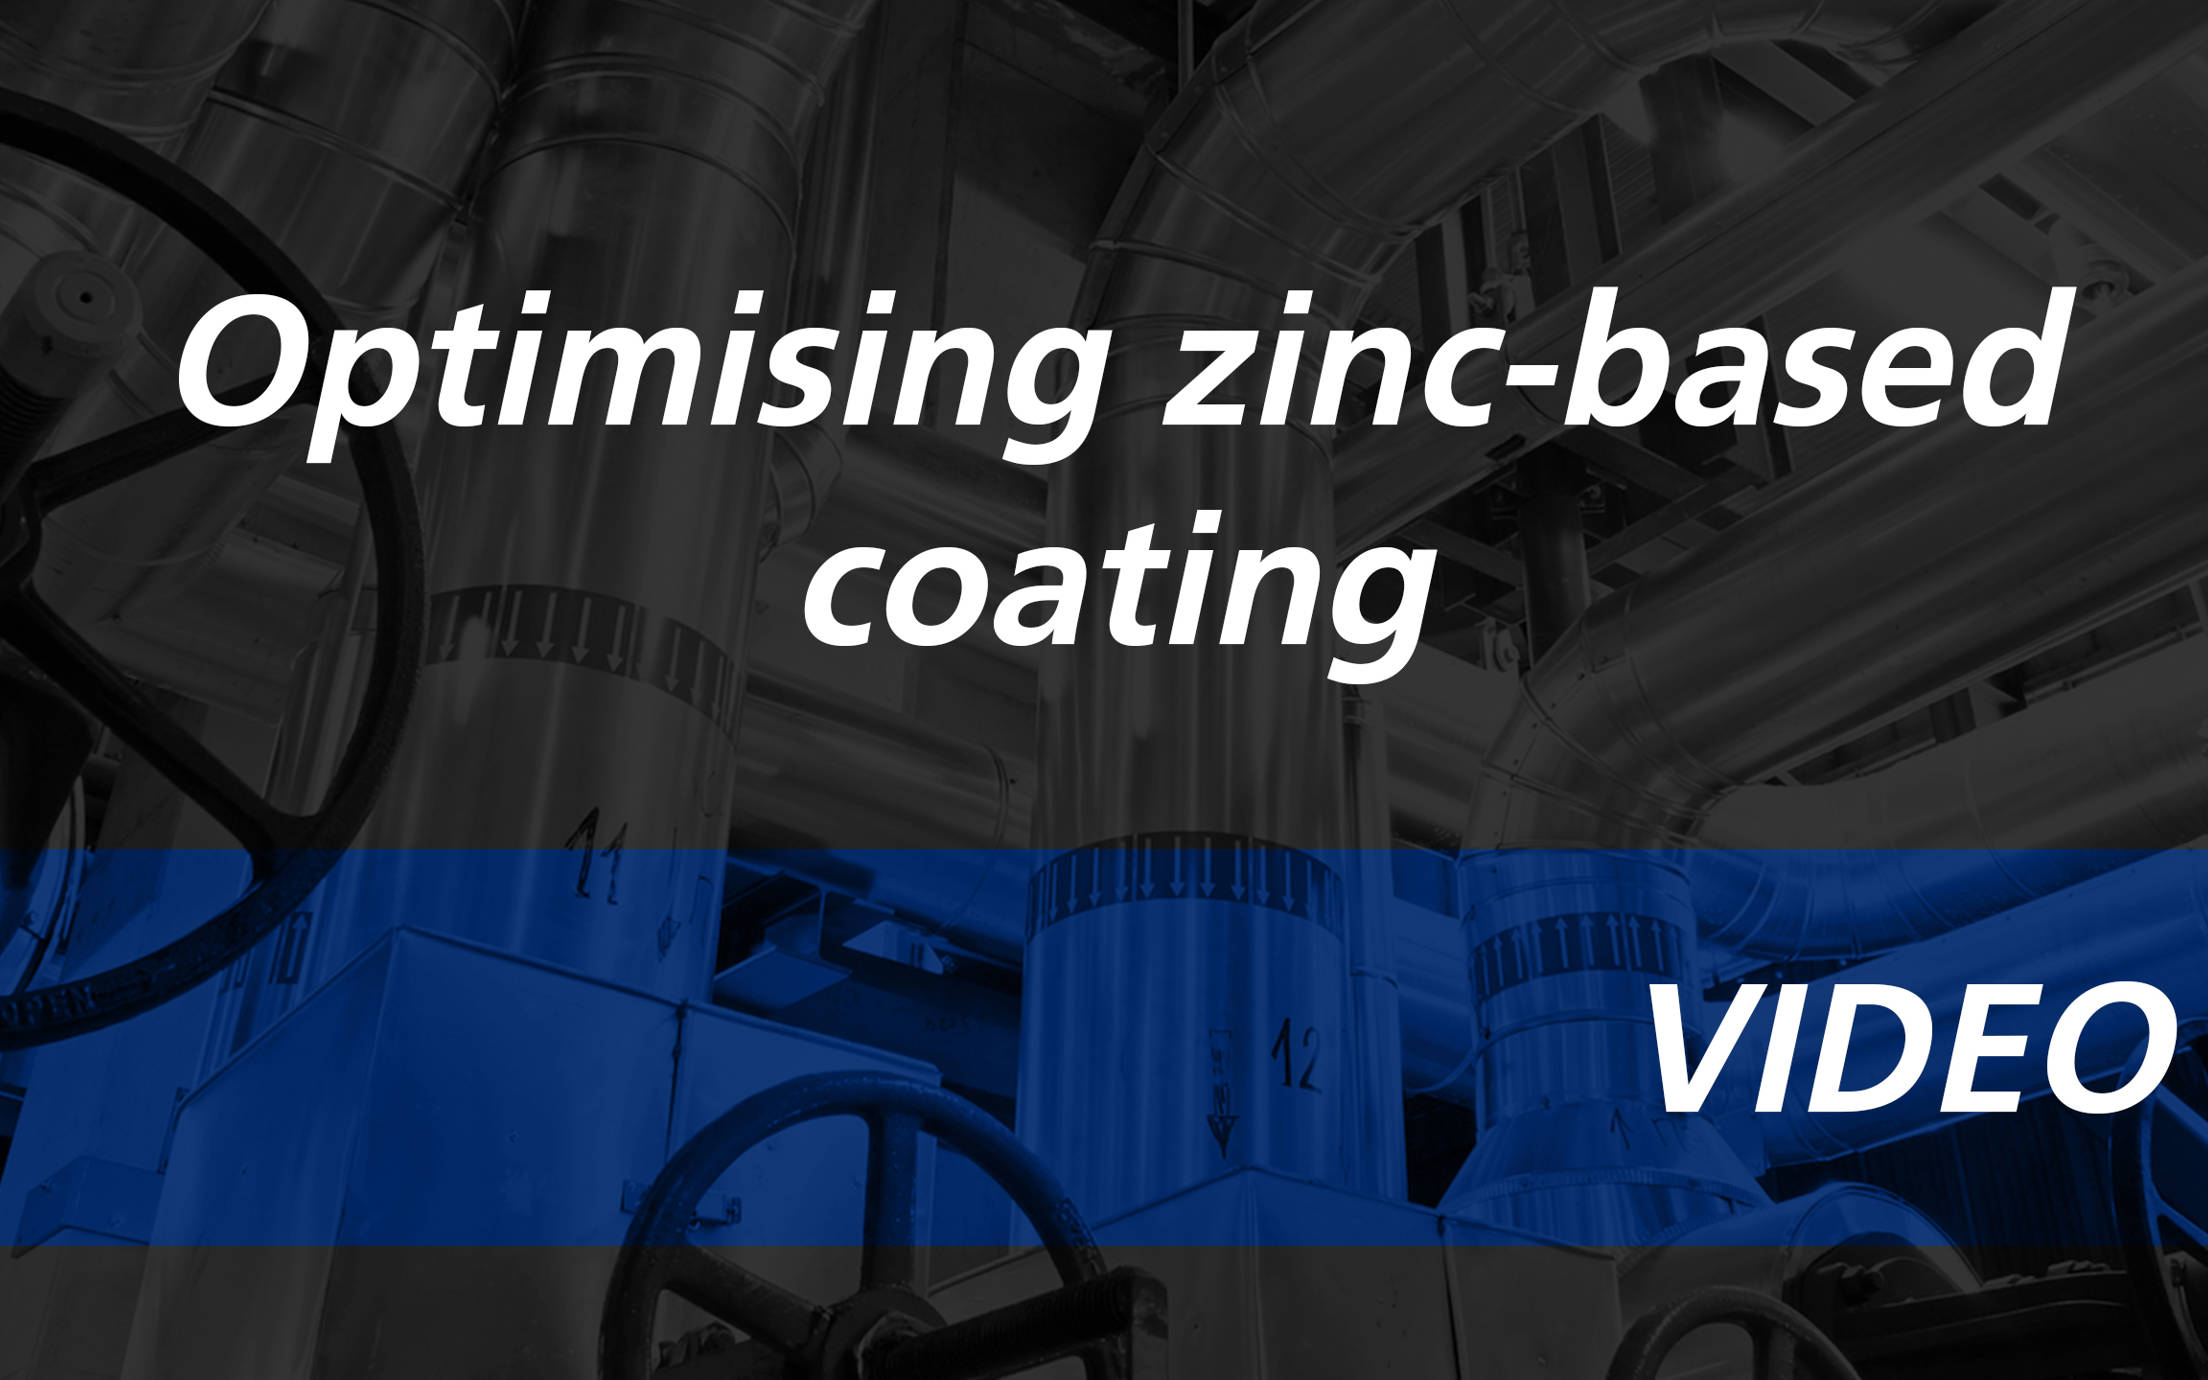 Optimizing zinc-based coating video thumbnail